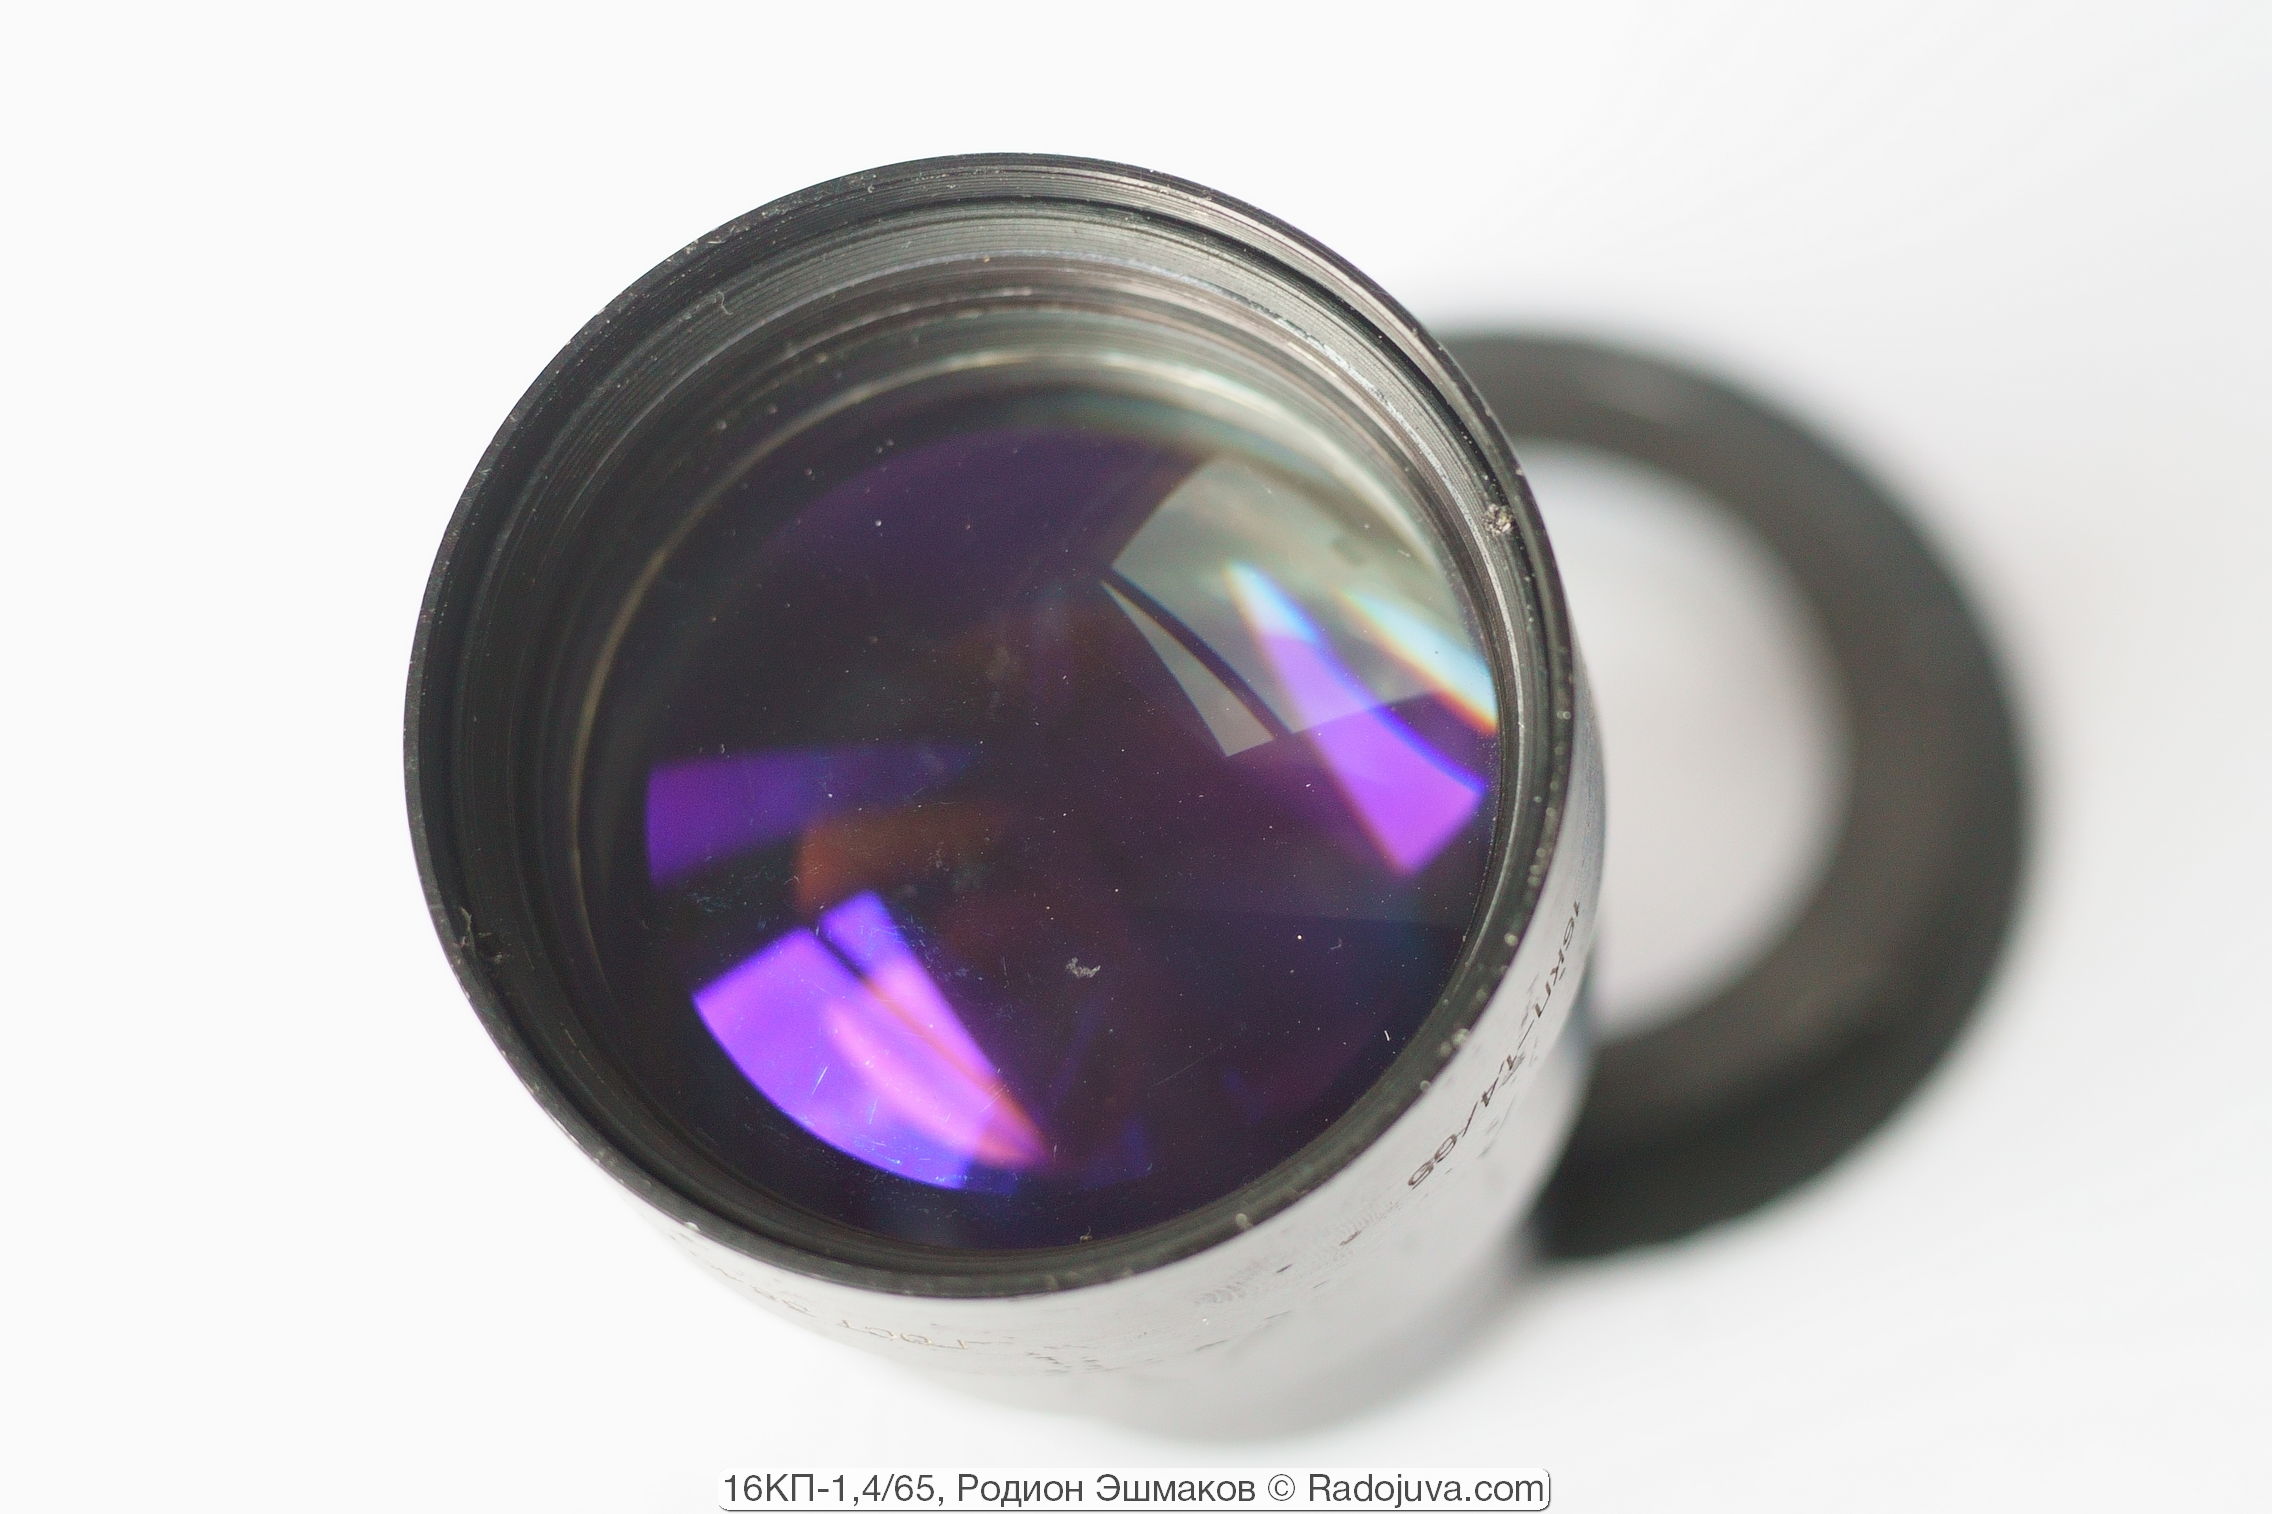 Capa violeta de la lente frontal de la lente.